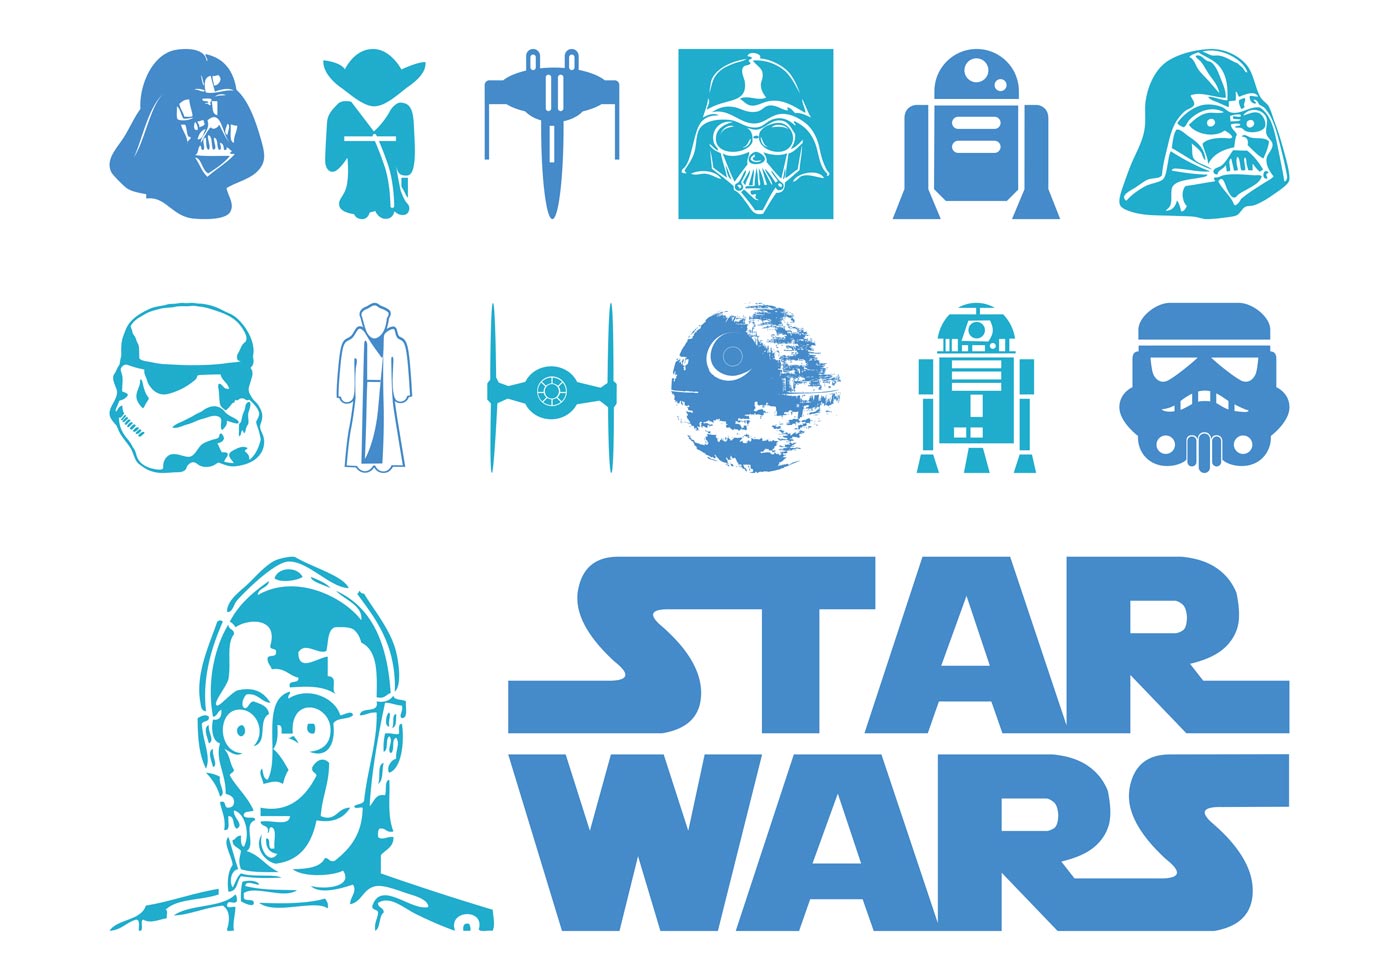 Logo Et Personnages De Star Wars Telecharger Vectoriel Gratuit Clipart Graphique Vecteur Dessins Et Pictogramme Gratuit